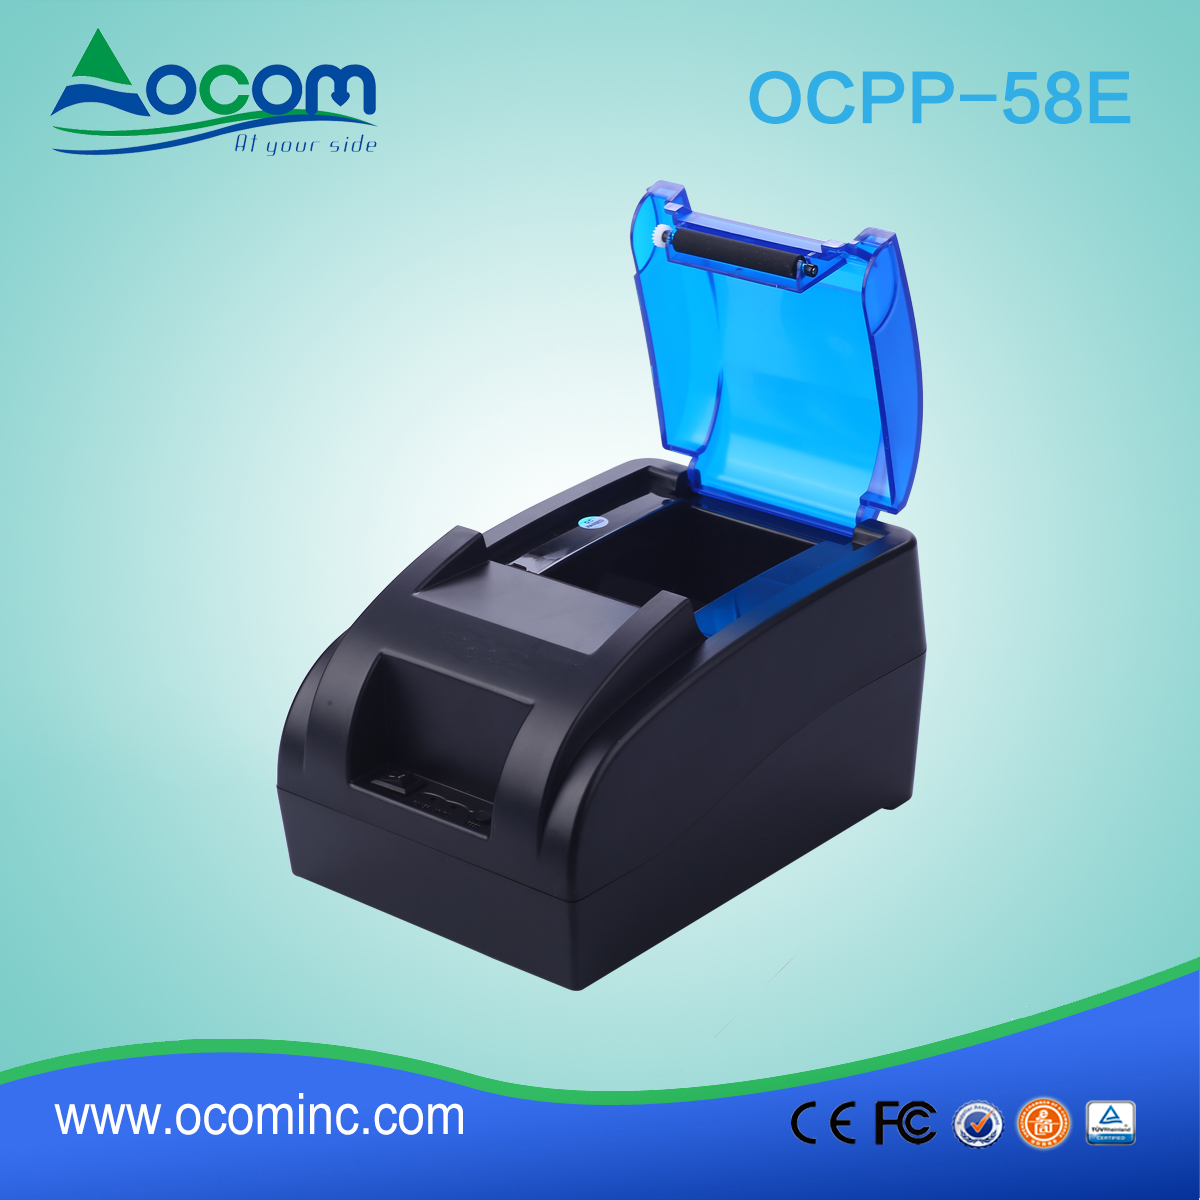 58mm stampante termica per ricevute OCPP-58E-BT Comunicazione Bluetooth